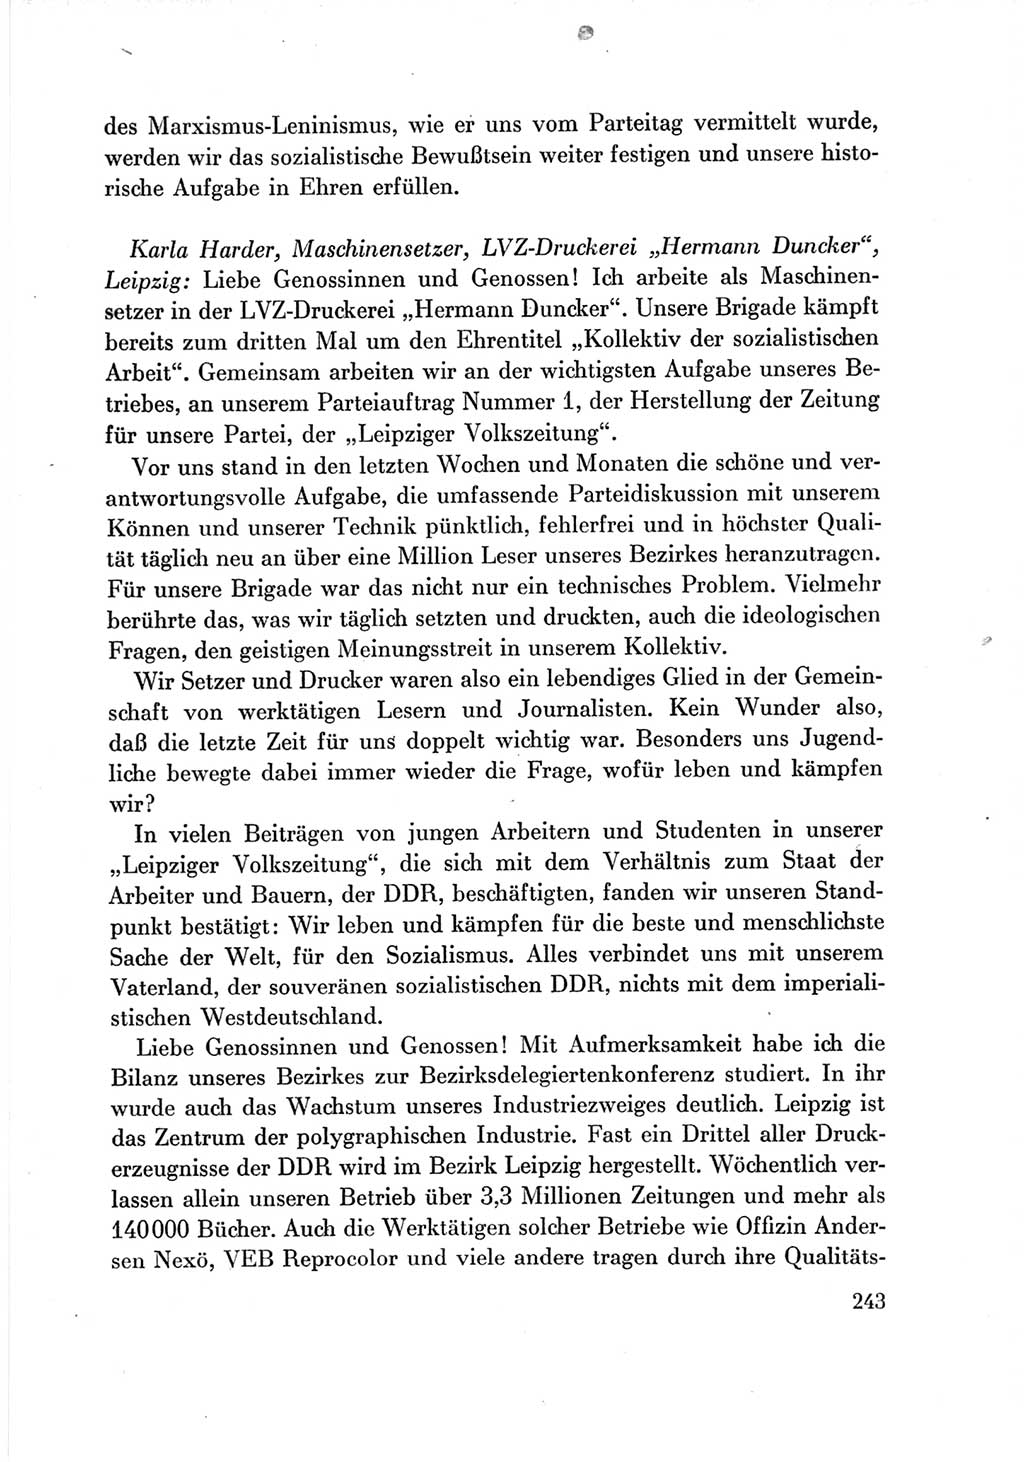 Protokoll der Verhandlungen des Ⅶ. Parteitages der Sozialistischen Einheitspartei Deutschlands (SED) [Deutsche Demokratische Republik (DDR)] 1967, Band Ⅲ, Seite 243 (Prot. Verh. Ⅶ. PT SED DDR 1967, Bd. Ⅲ, S. 243)